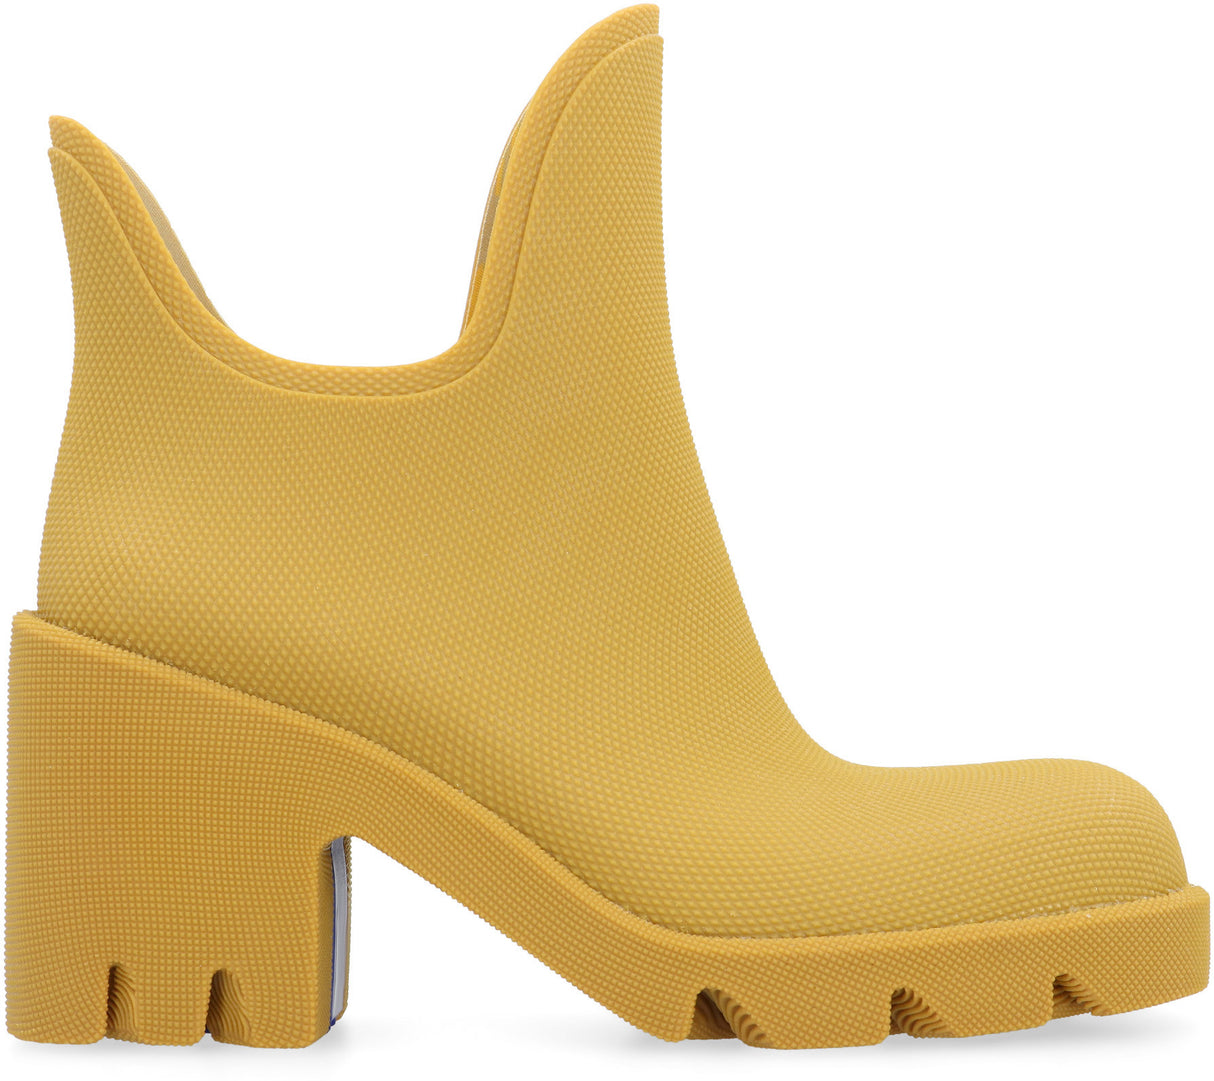 女士芥末色橡胶靴- FW23系列（不含品牌名称，避免外来词语）